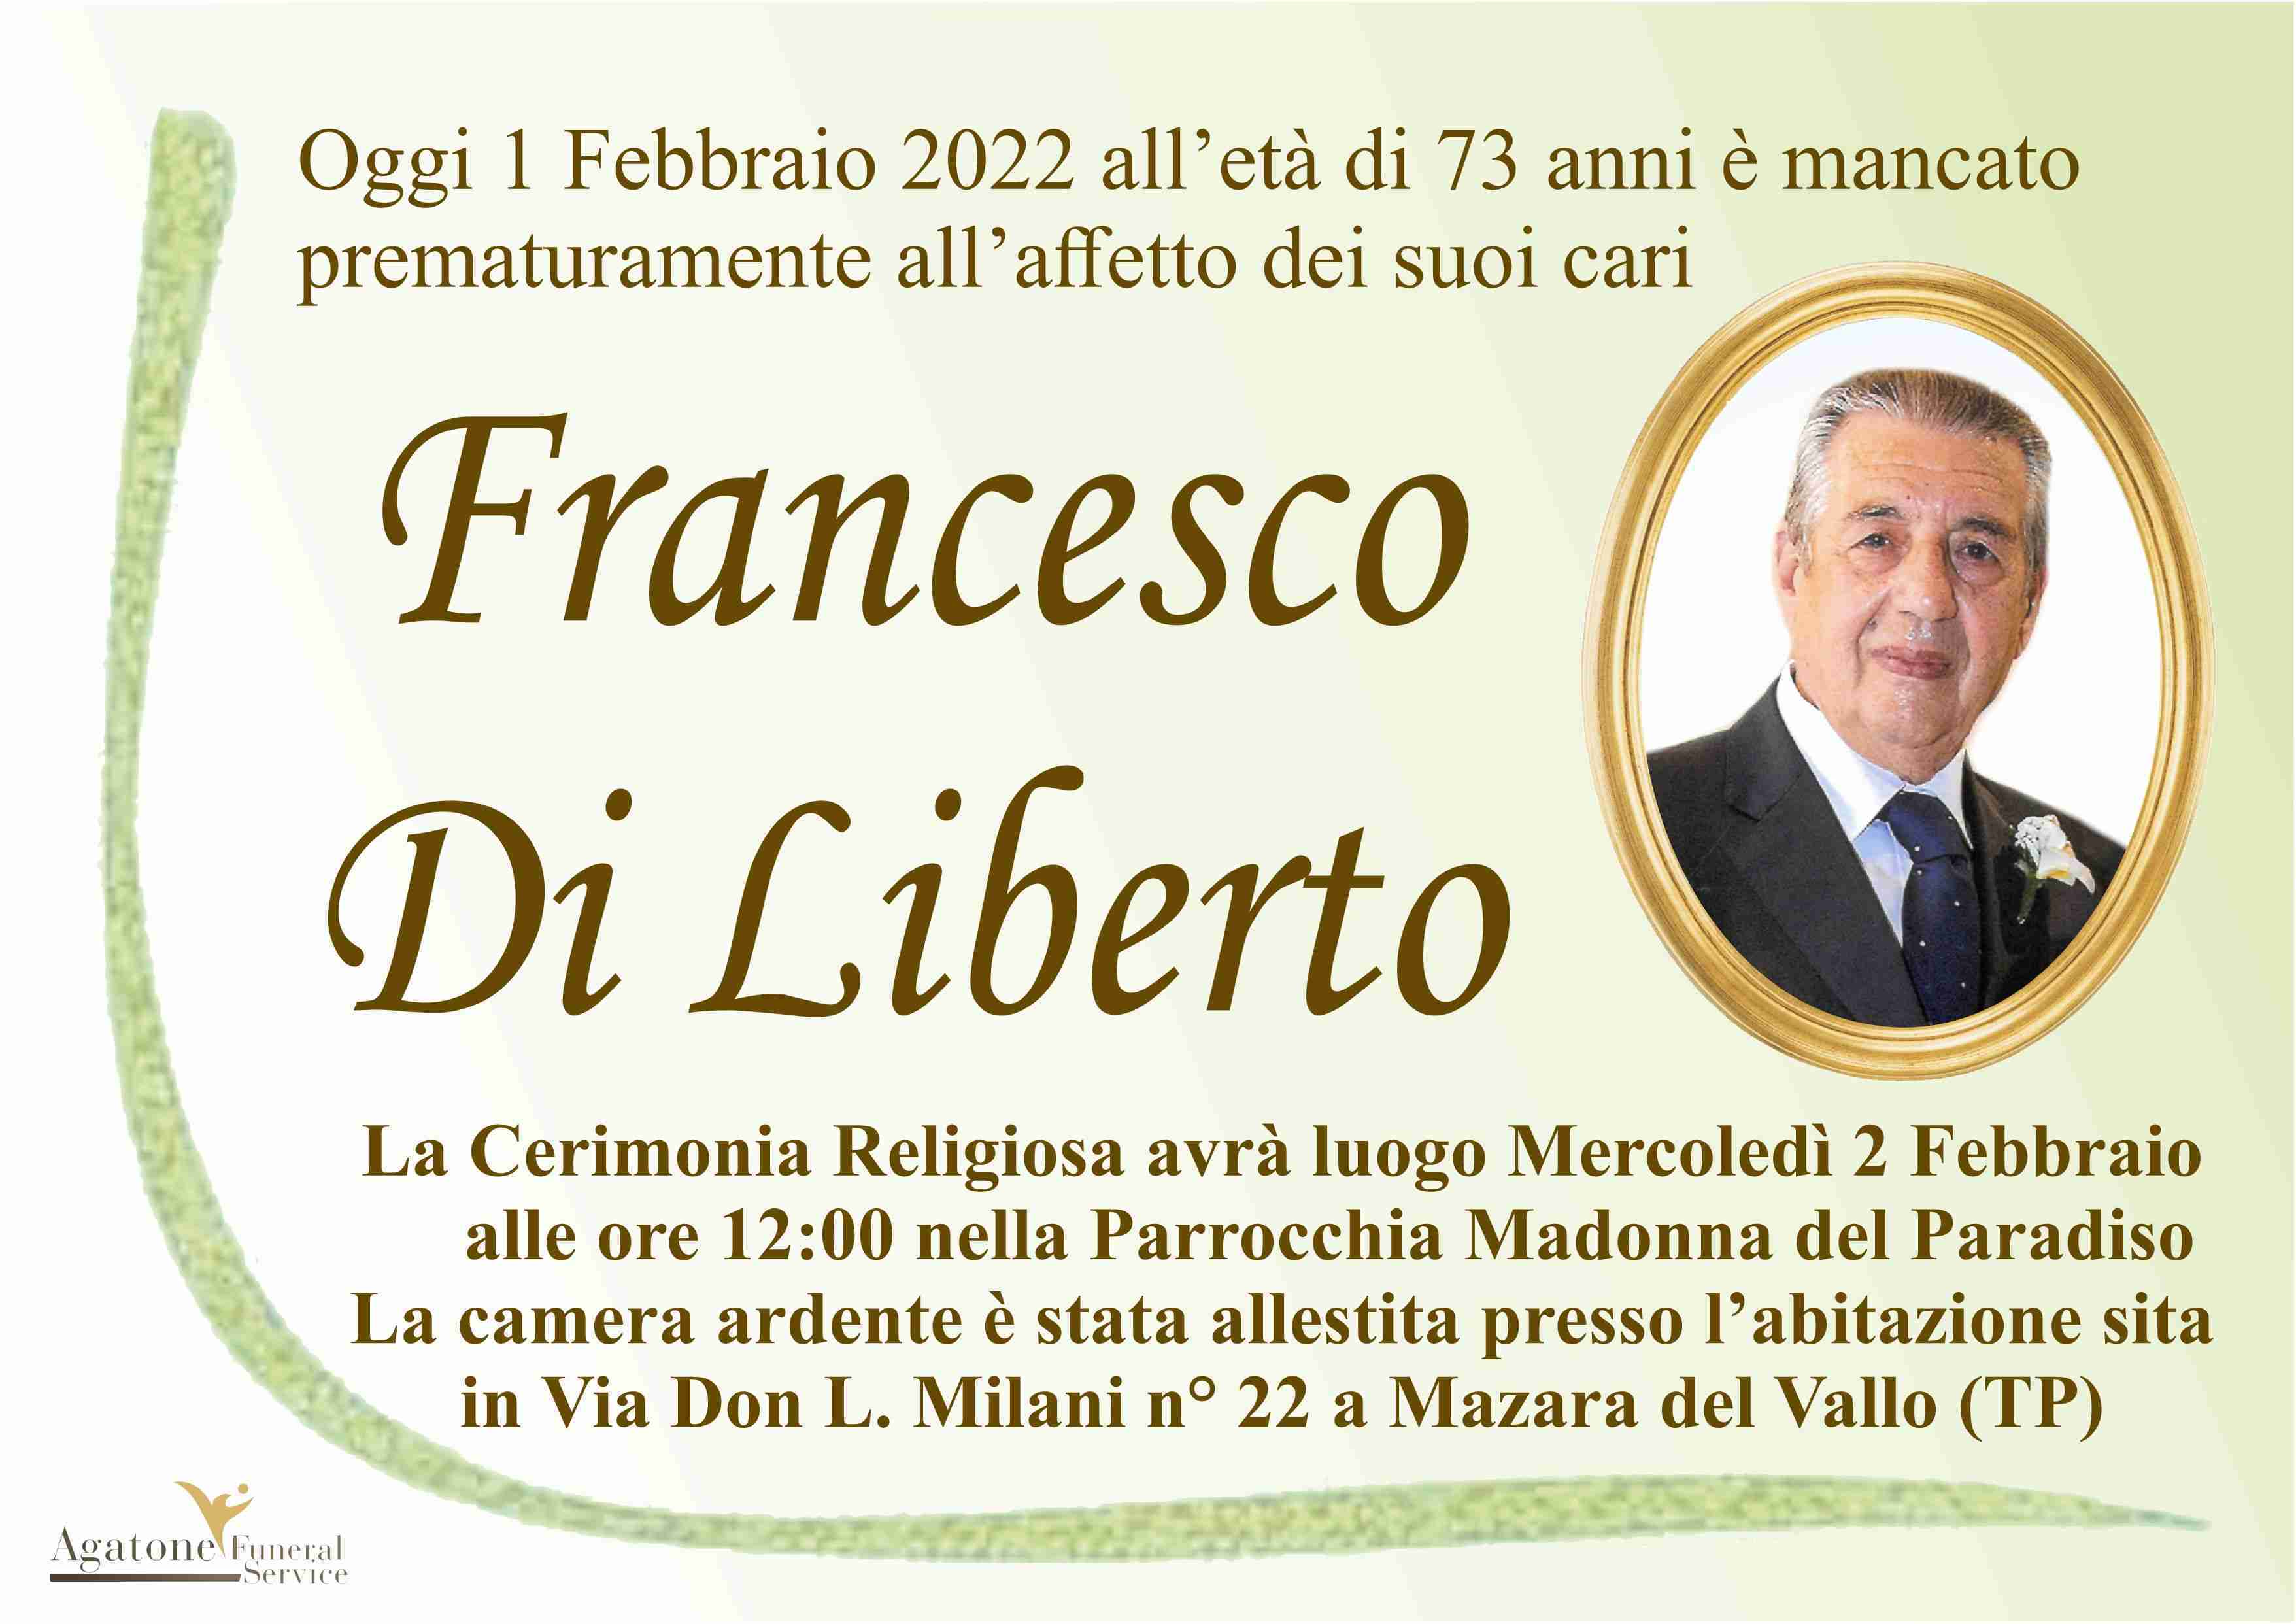 Francesco Di Liberto